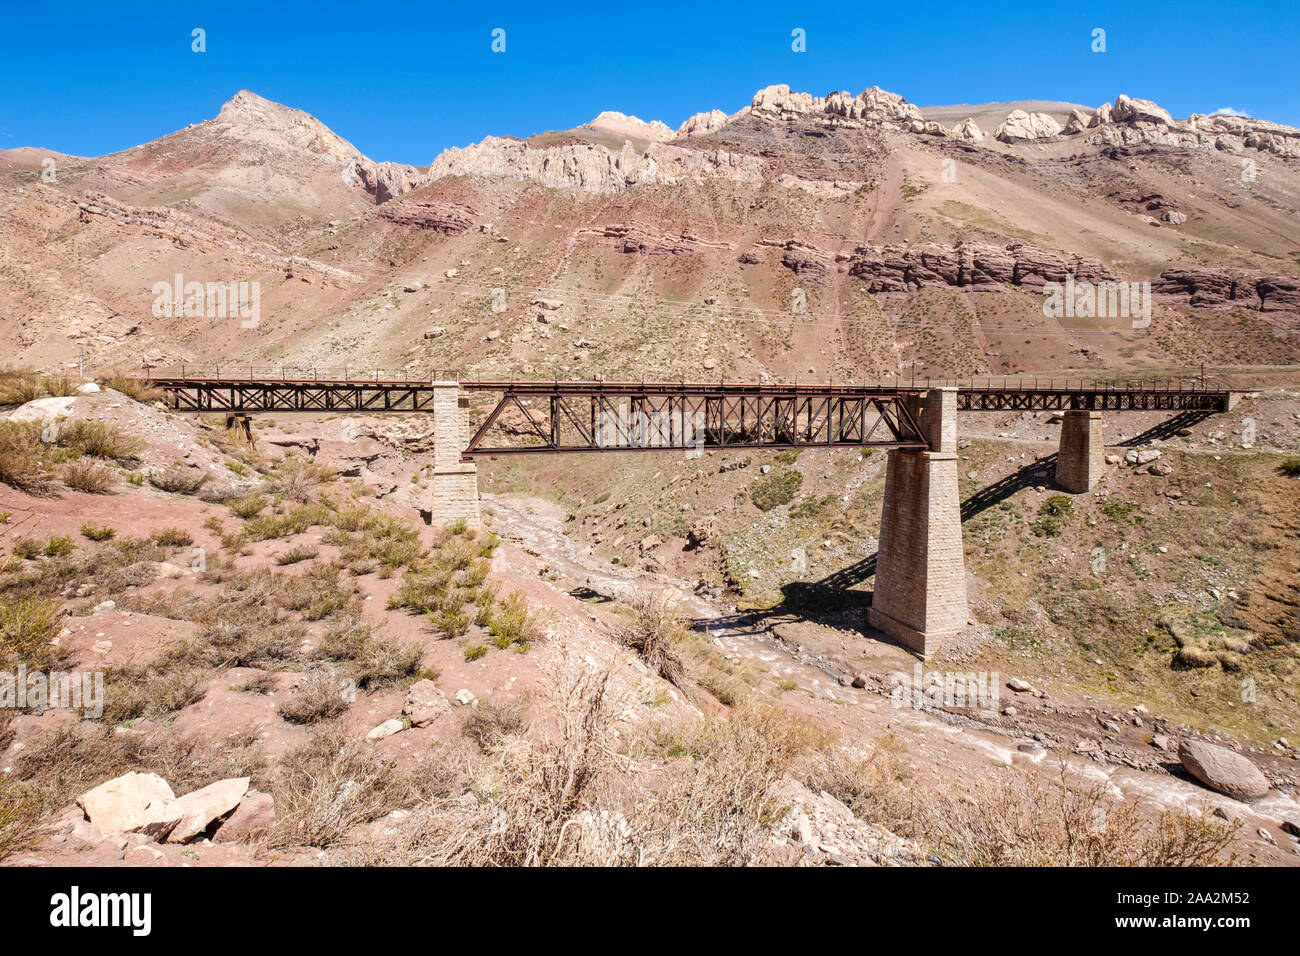 Railway iron bridge over the River Mendoza on the Andean Mountain Range near Puente del Inca in Mendoza Province, Argentina Stock Photo